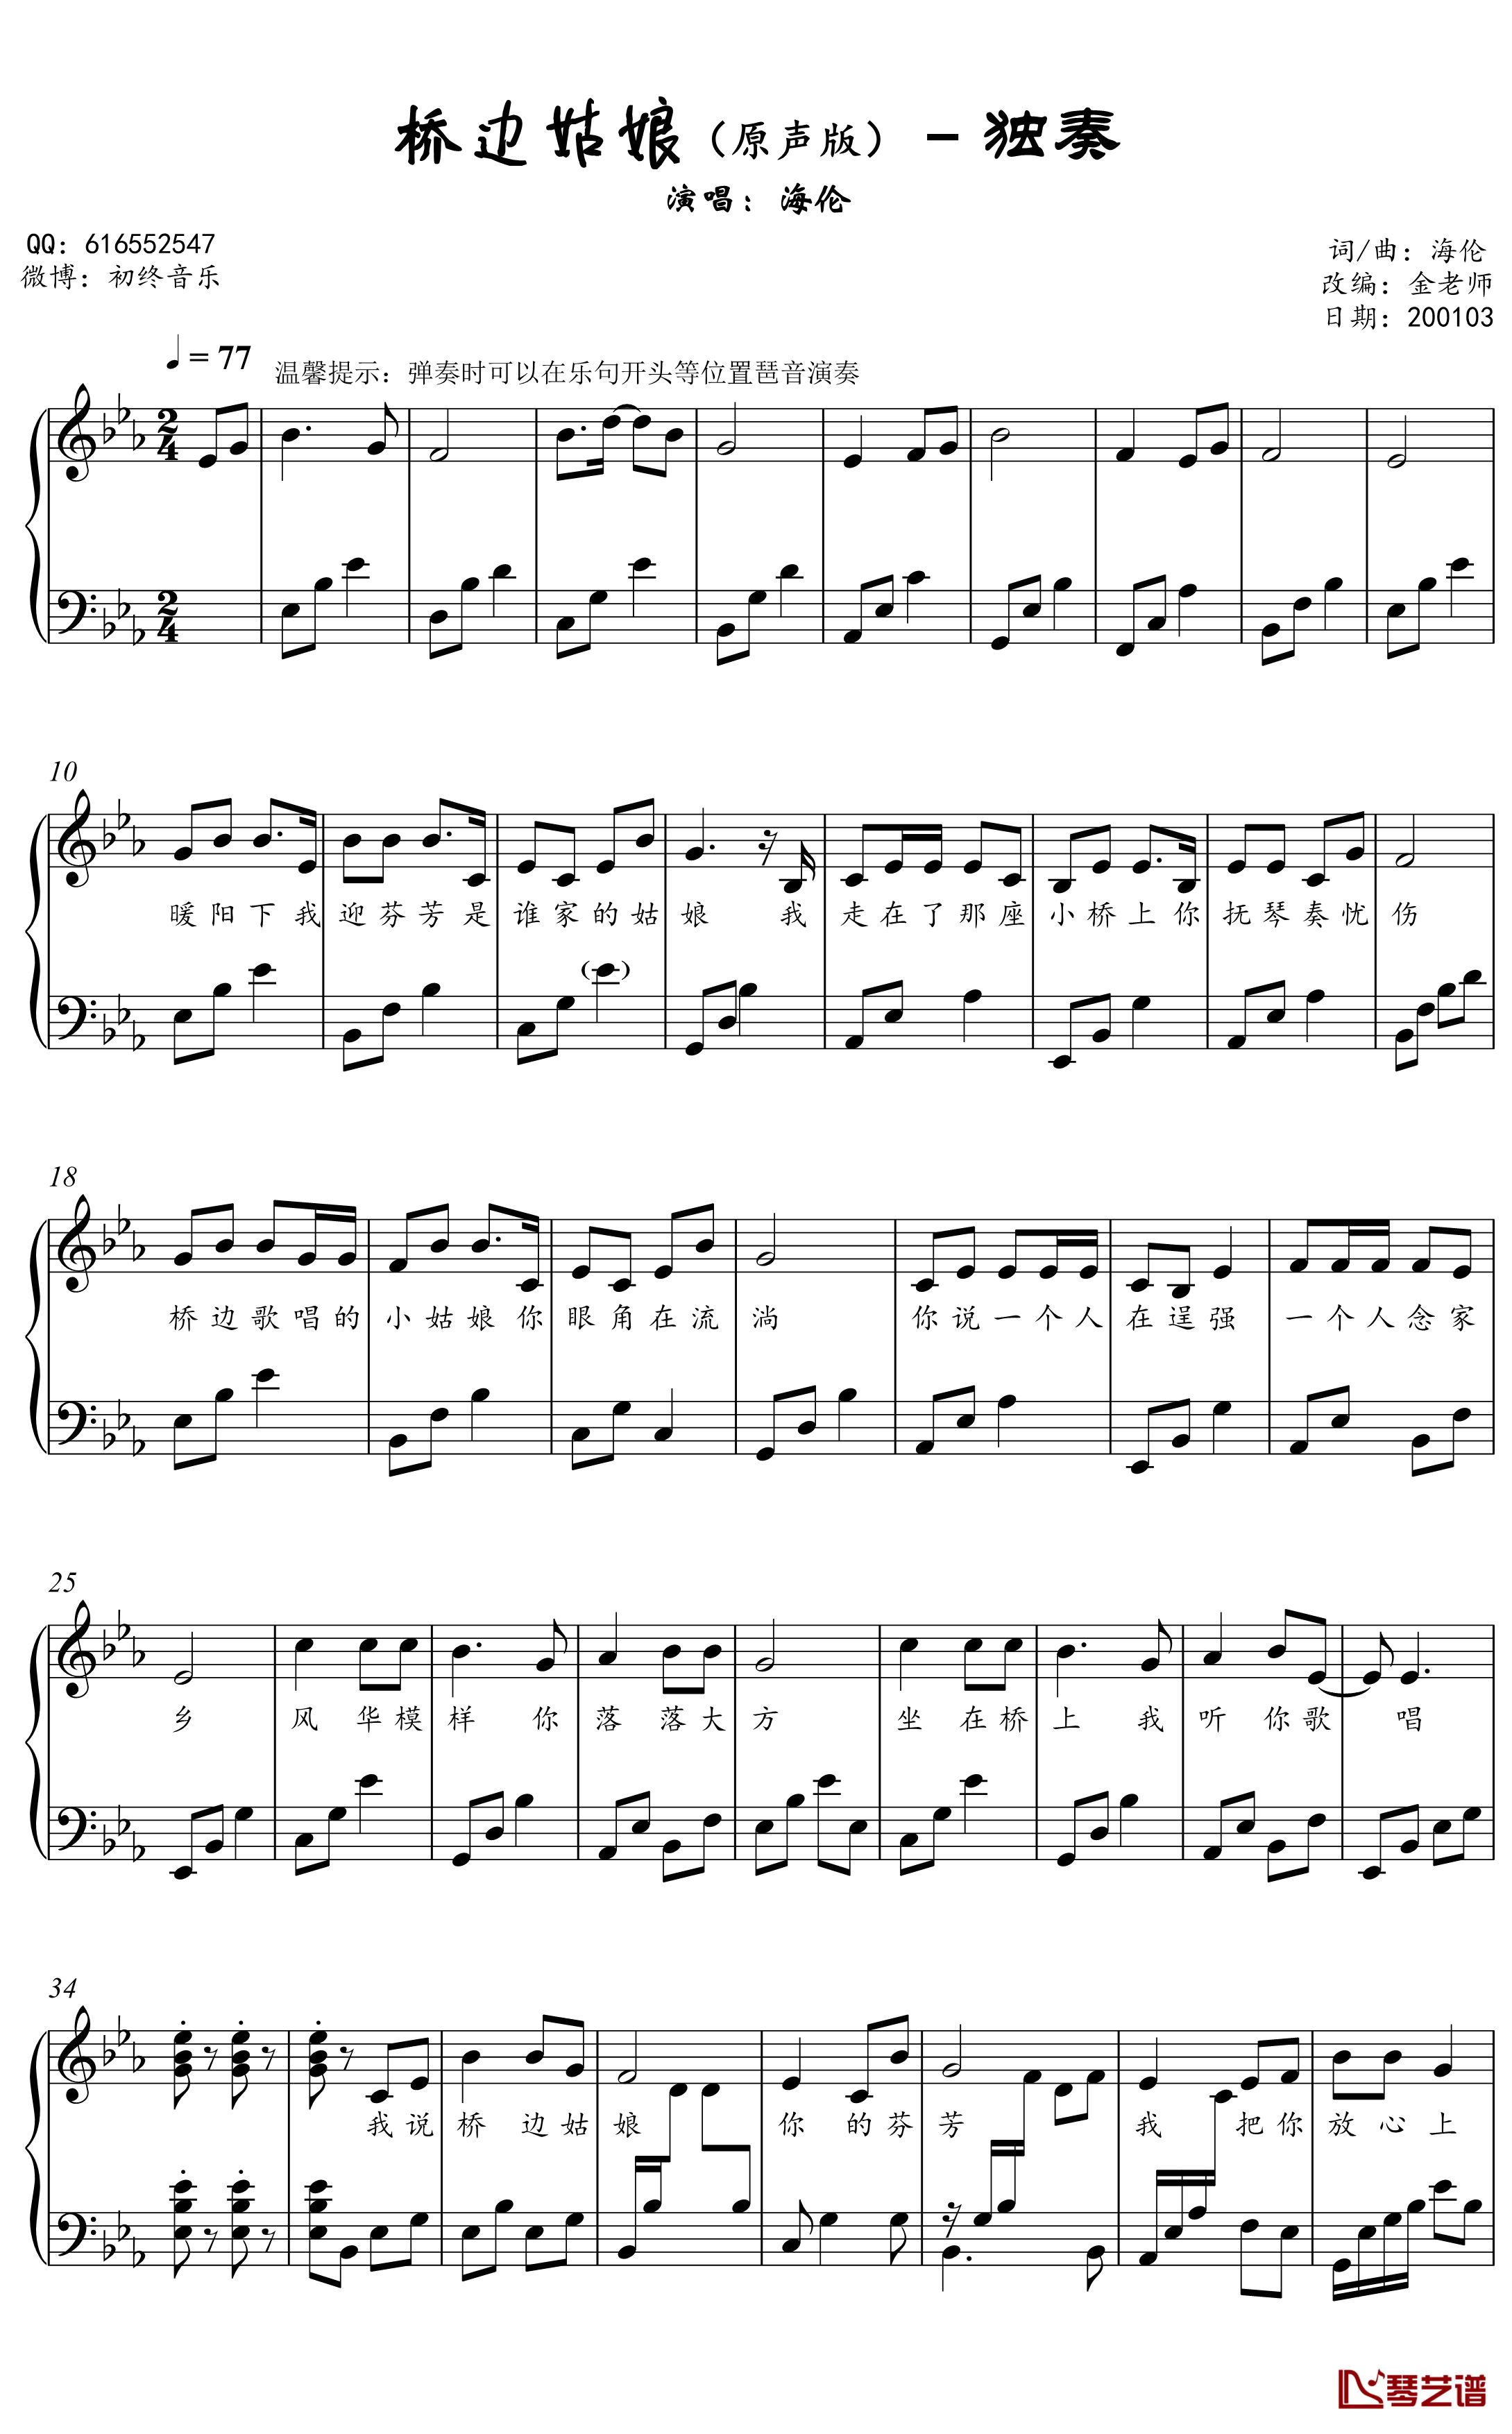 桥边姑娘钢琴谱-金老师原声独奏谱2001032